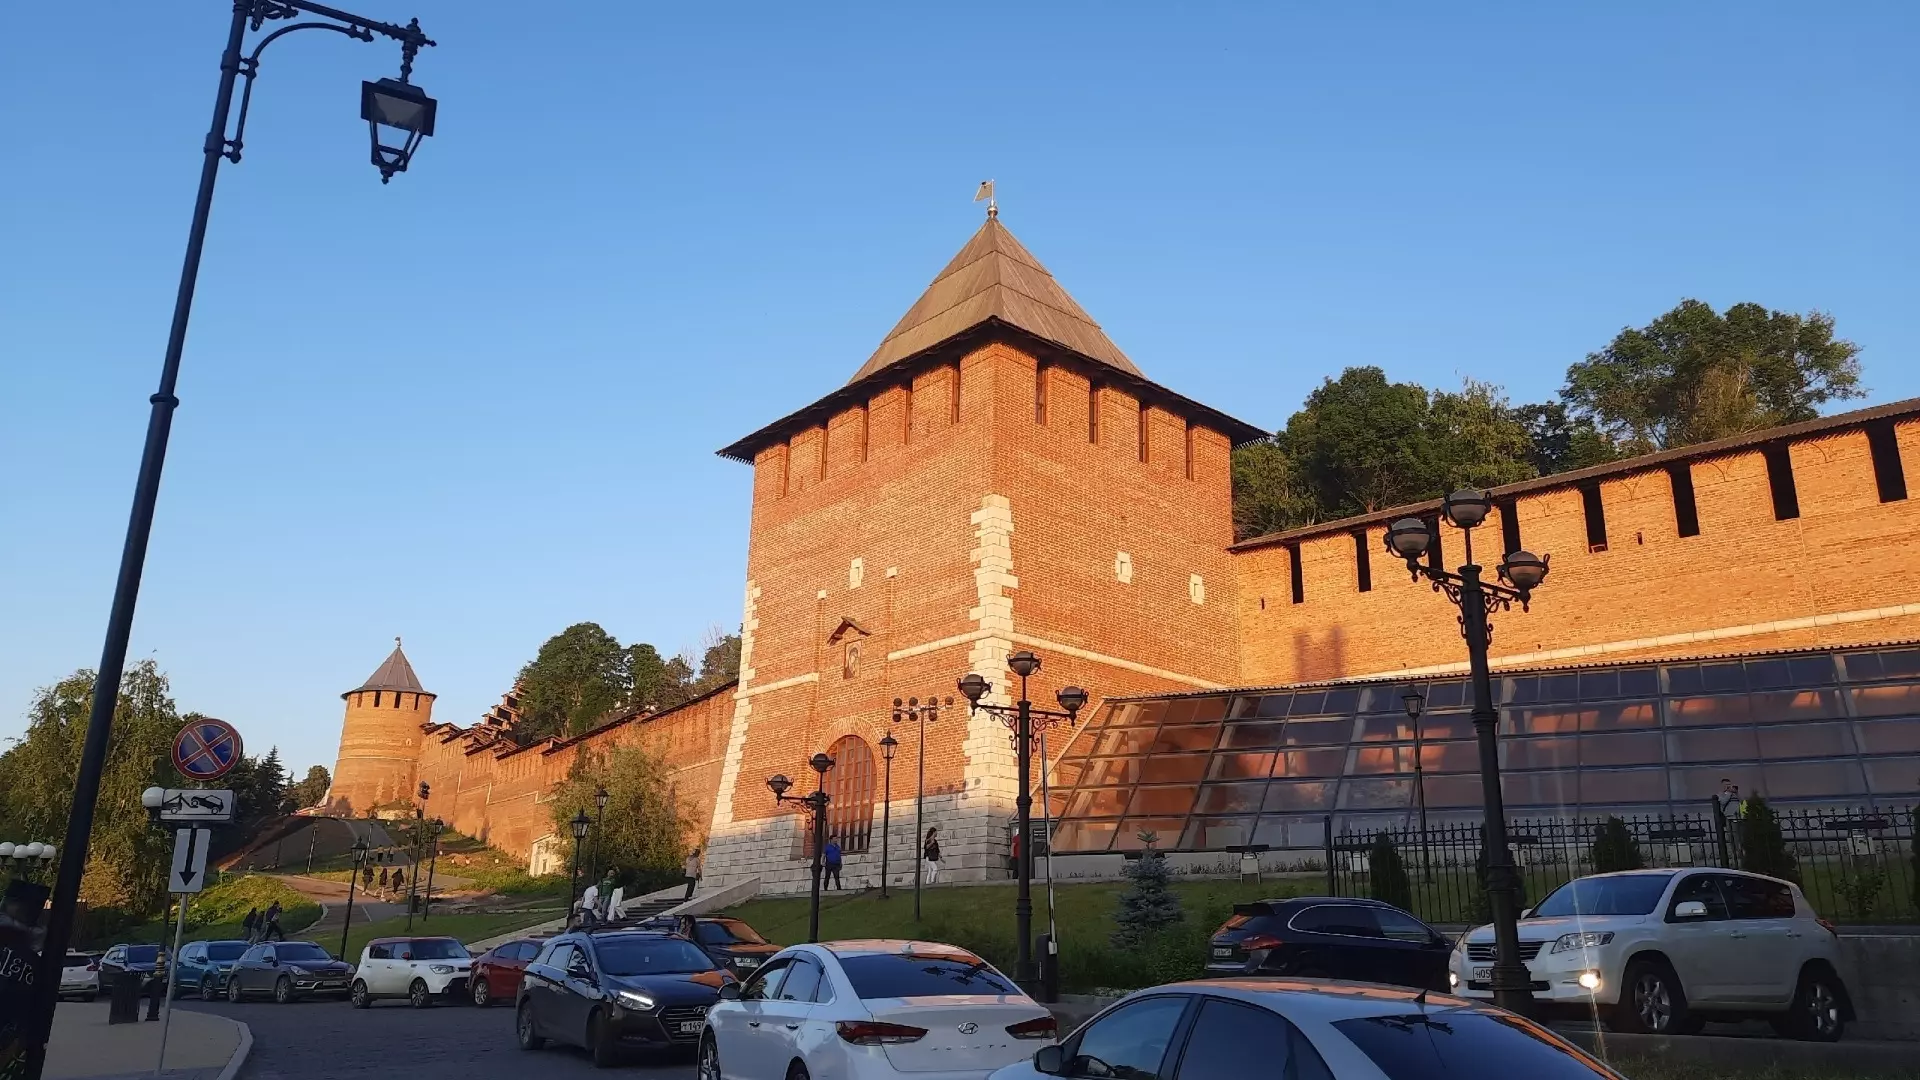 27 млн рублей выделено на благоустройство сквера у Зачатьевской башни